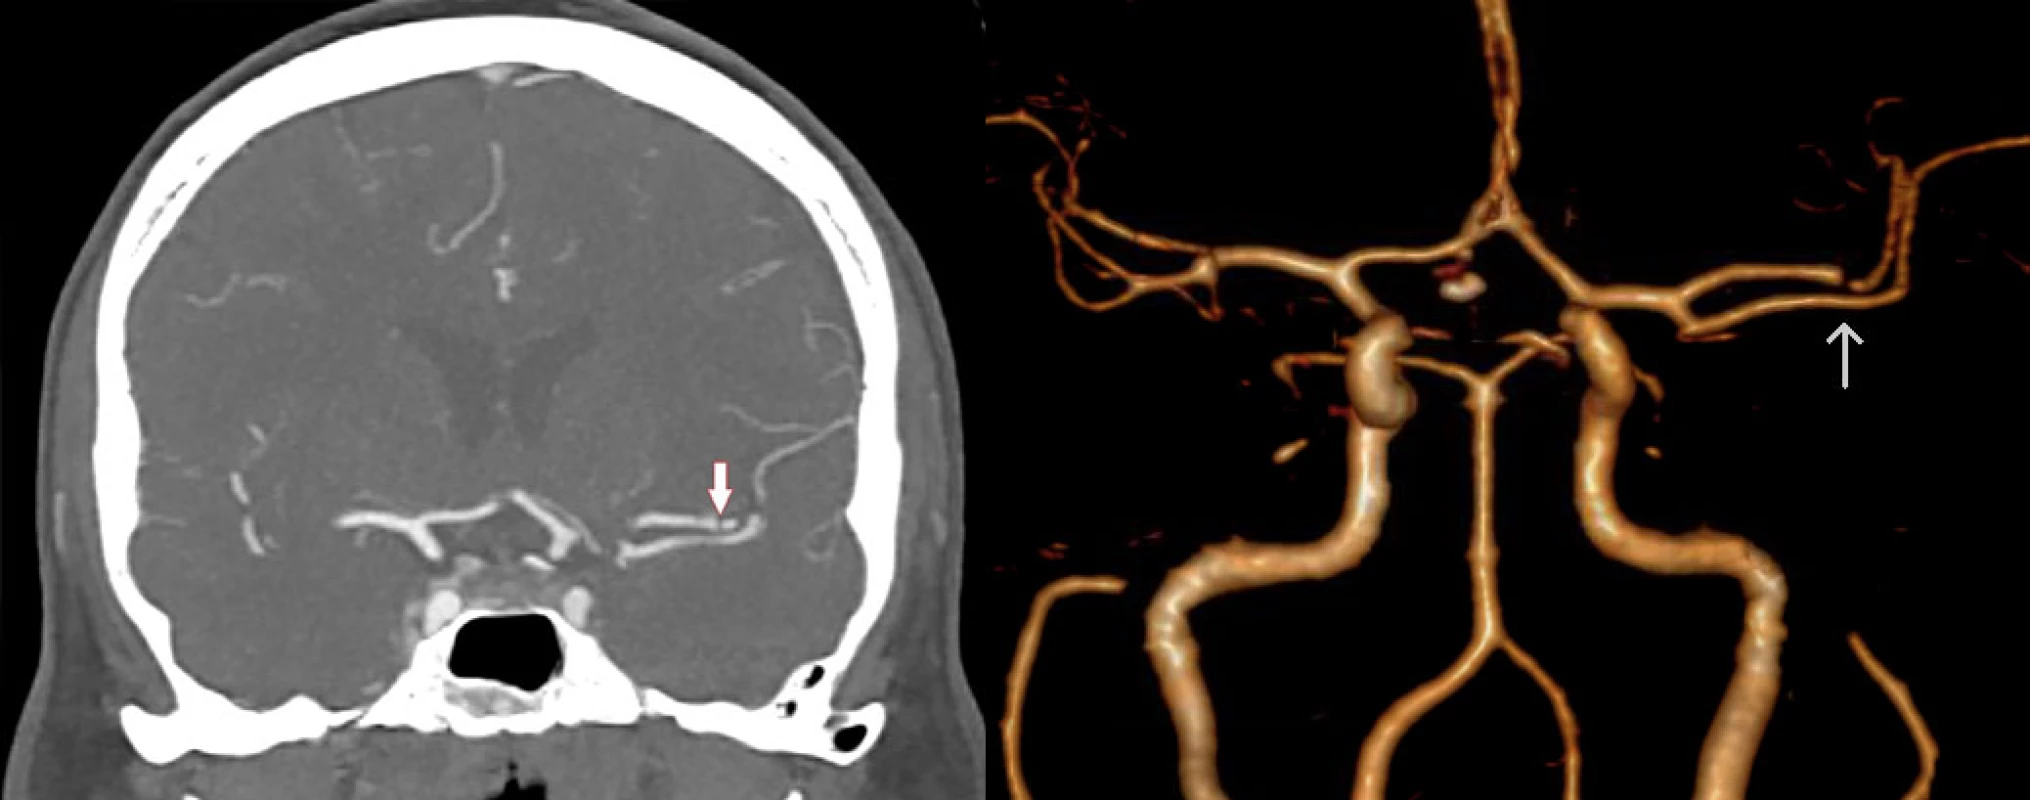 CTA in coronal section (left) and 3D reconstruction (right) shows short intraluminal filling defect in the M2 segment of the left MCA (arrow). MCA – middle cerebral artery<br>
Obr. 1 CTA ve frontálním řezu (vlevo) a 3D rekonstrukce (vpravo) ukazuje krátký intraluminální defekt v úseku M2 levé ACM (šipka). ACM – arteria cerbri media